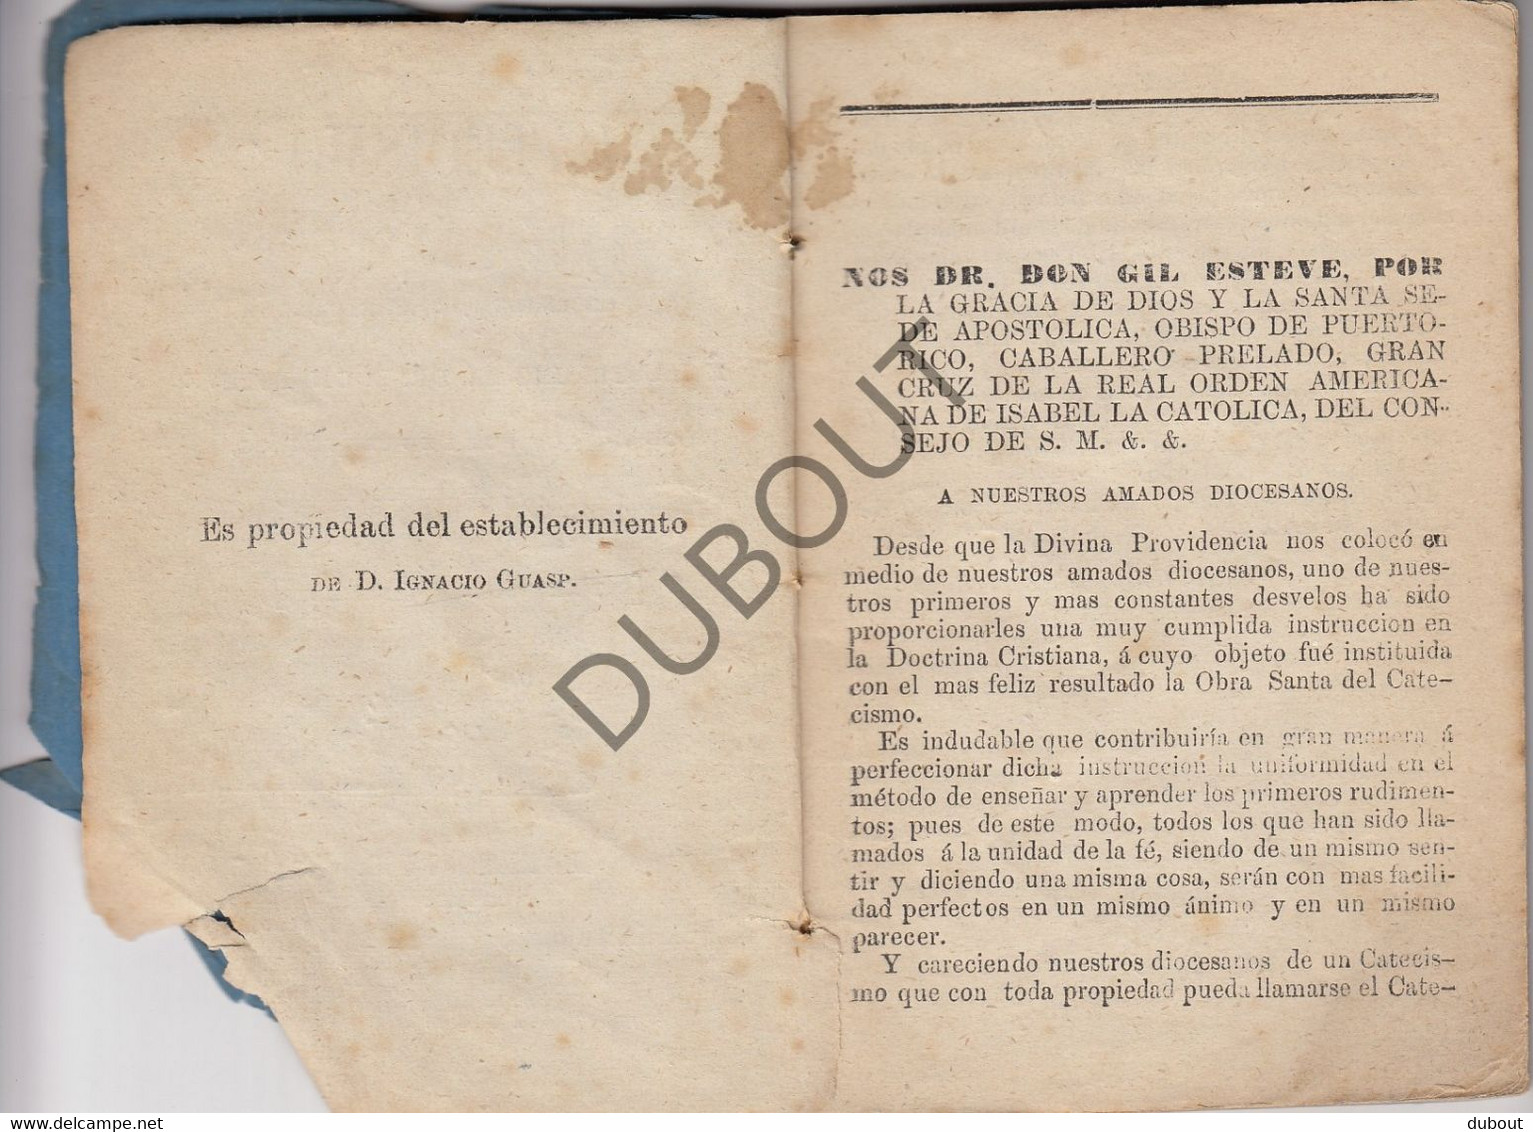 Catecismo - D. Gil Esteve - 1868 - Printed In  Puerto-Rico!! (W164) - Filosofie & Godsdienst